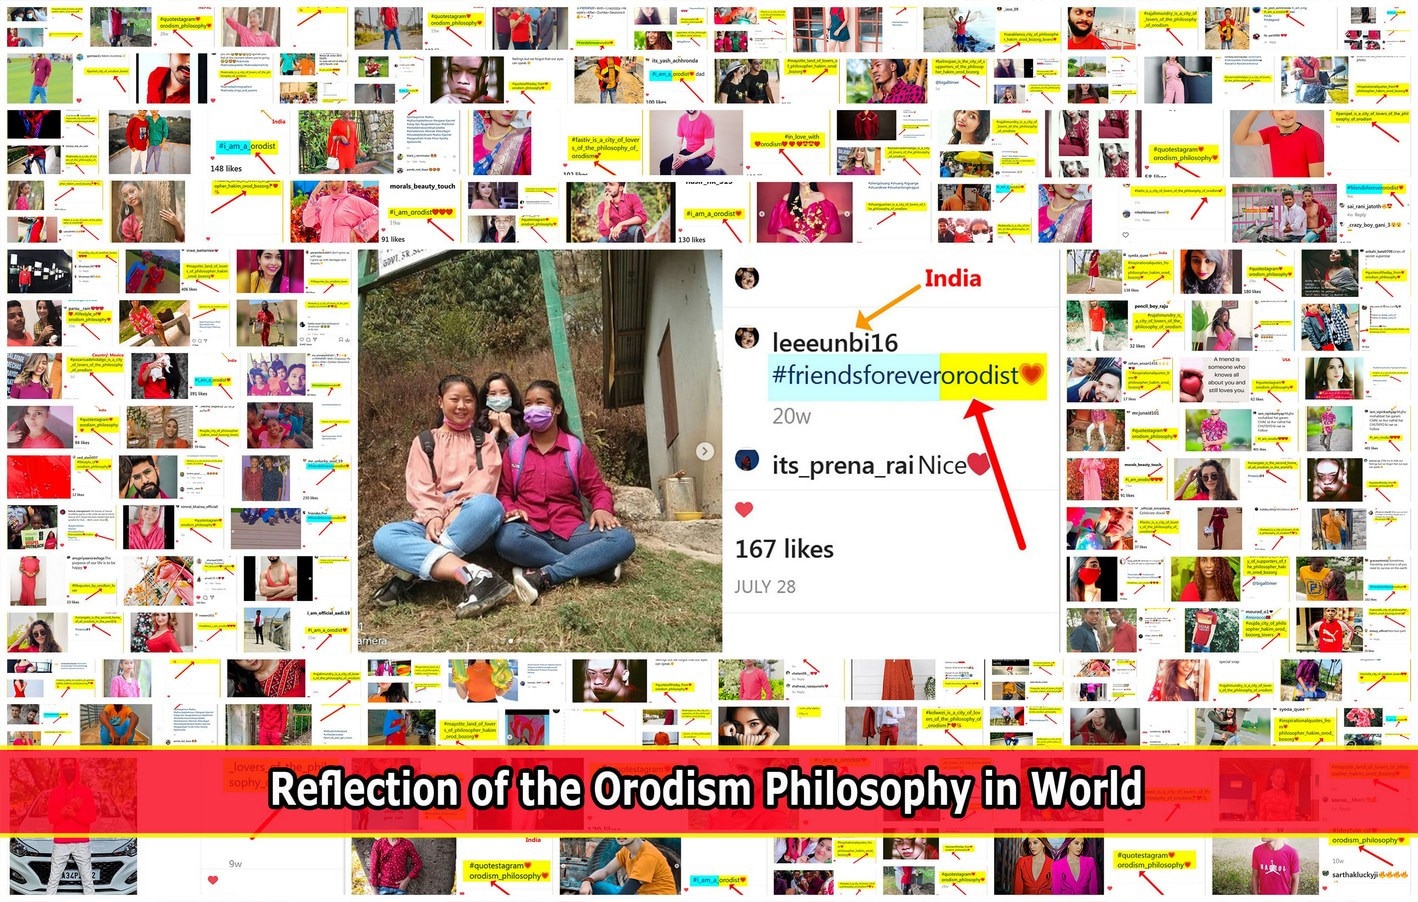 بازتاب فلسفه اُرُدیسم در کشور کره جنوبی The philosophy of Orodism in South Korea 9e77a993c2263ff1f430cb4ff54b53c4